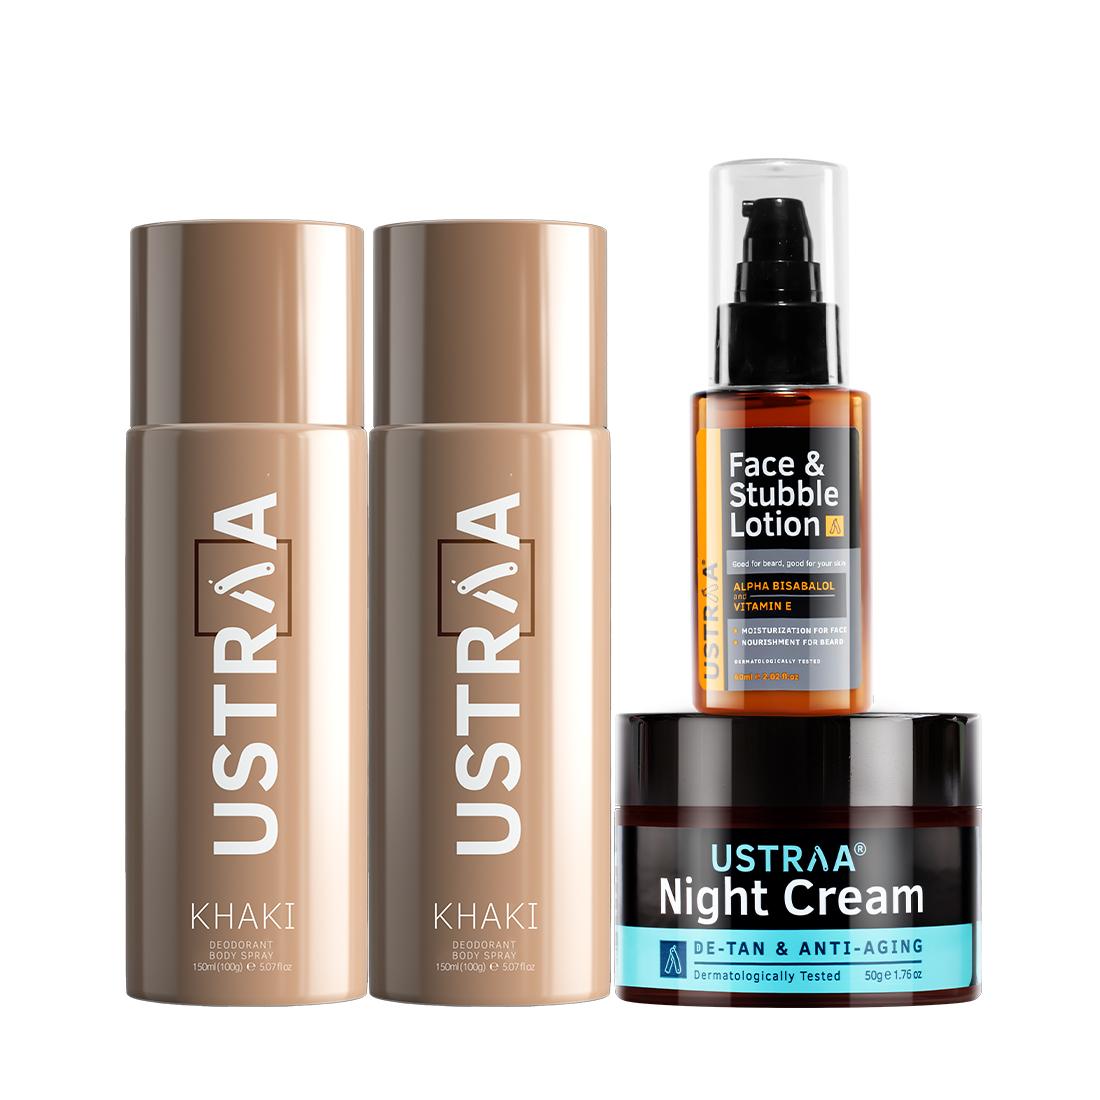 Ustraa Khaki Deodorant & Face & Stubble Lotion & Night Cream